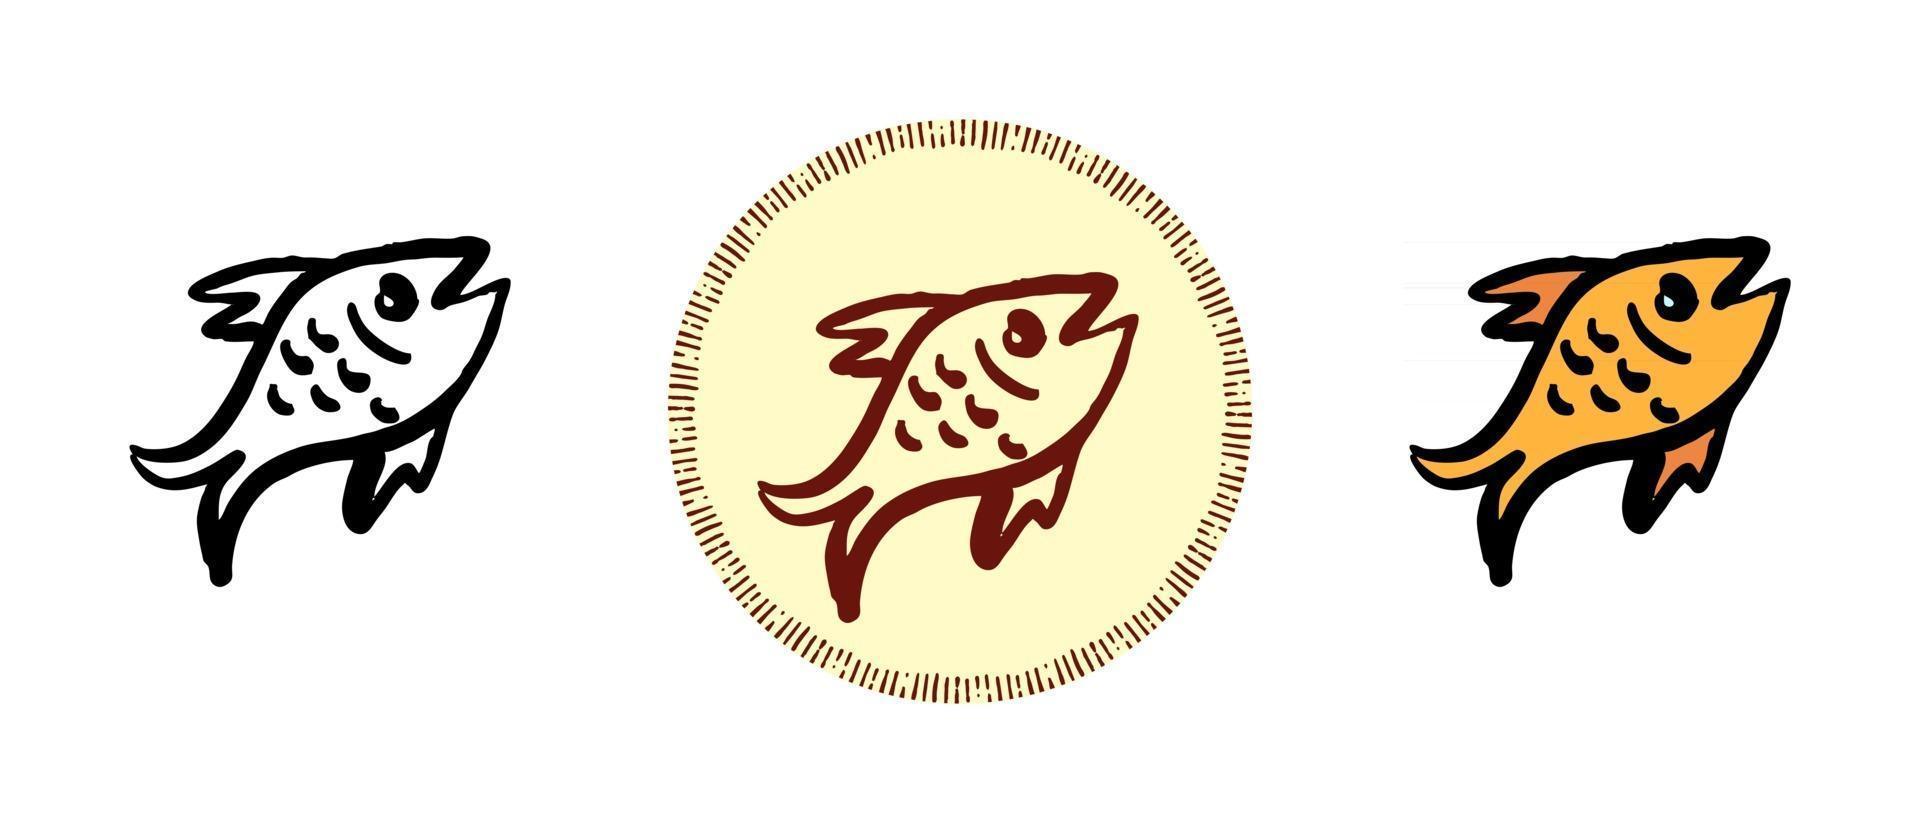 stekt fisk kontur och färg och retro symboler vektor